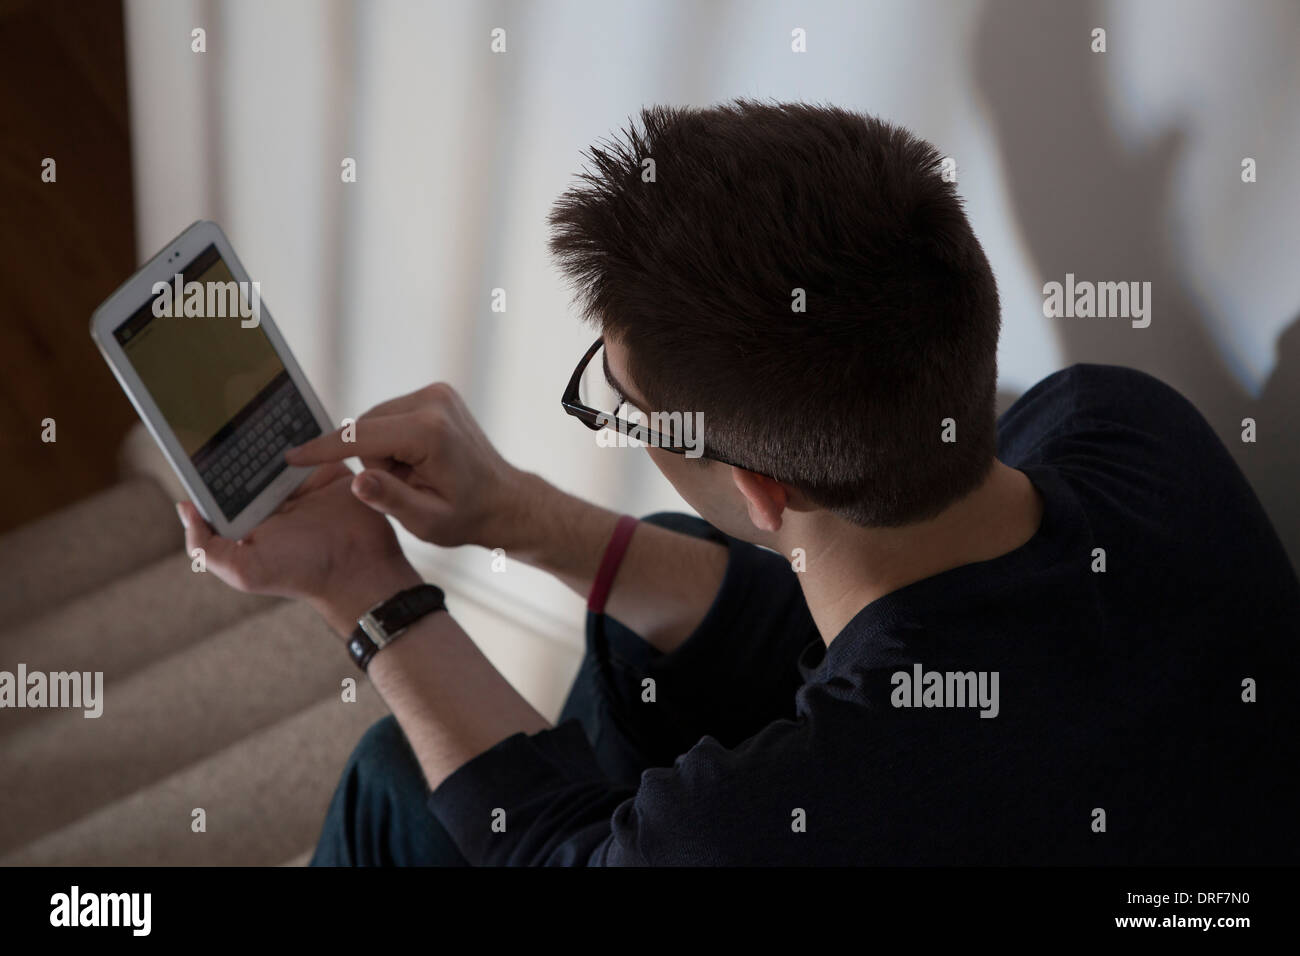 Sulla spalla colpo di uomo che indossa gli occhiali digitando su una tastiera sullo schermo a sfioramento digitale compressa. Foto Stock